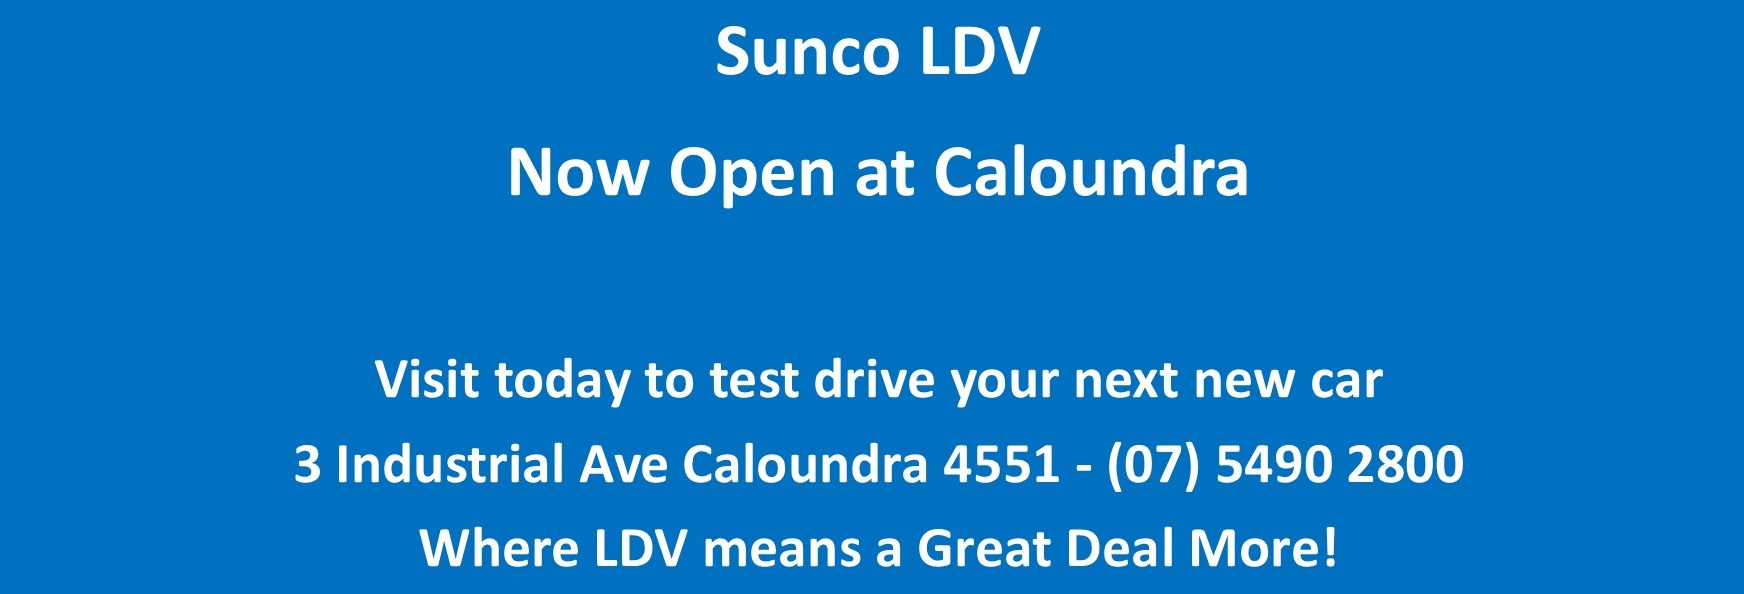 Caloundra Opening LDV